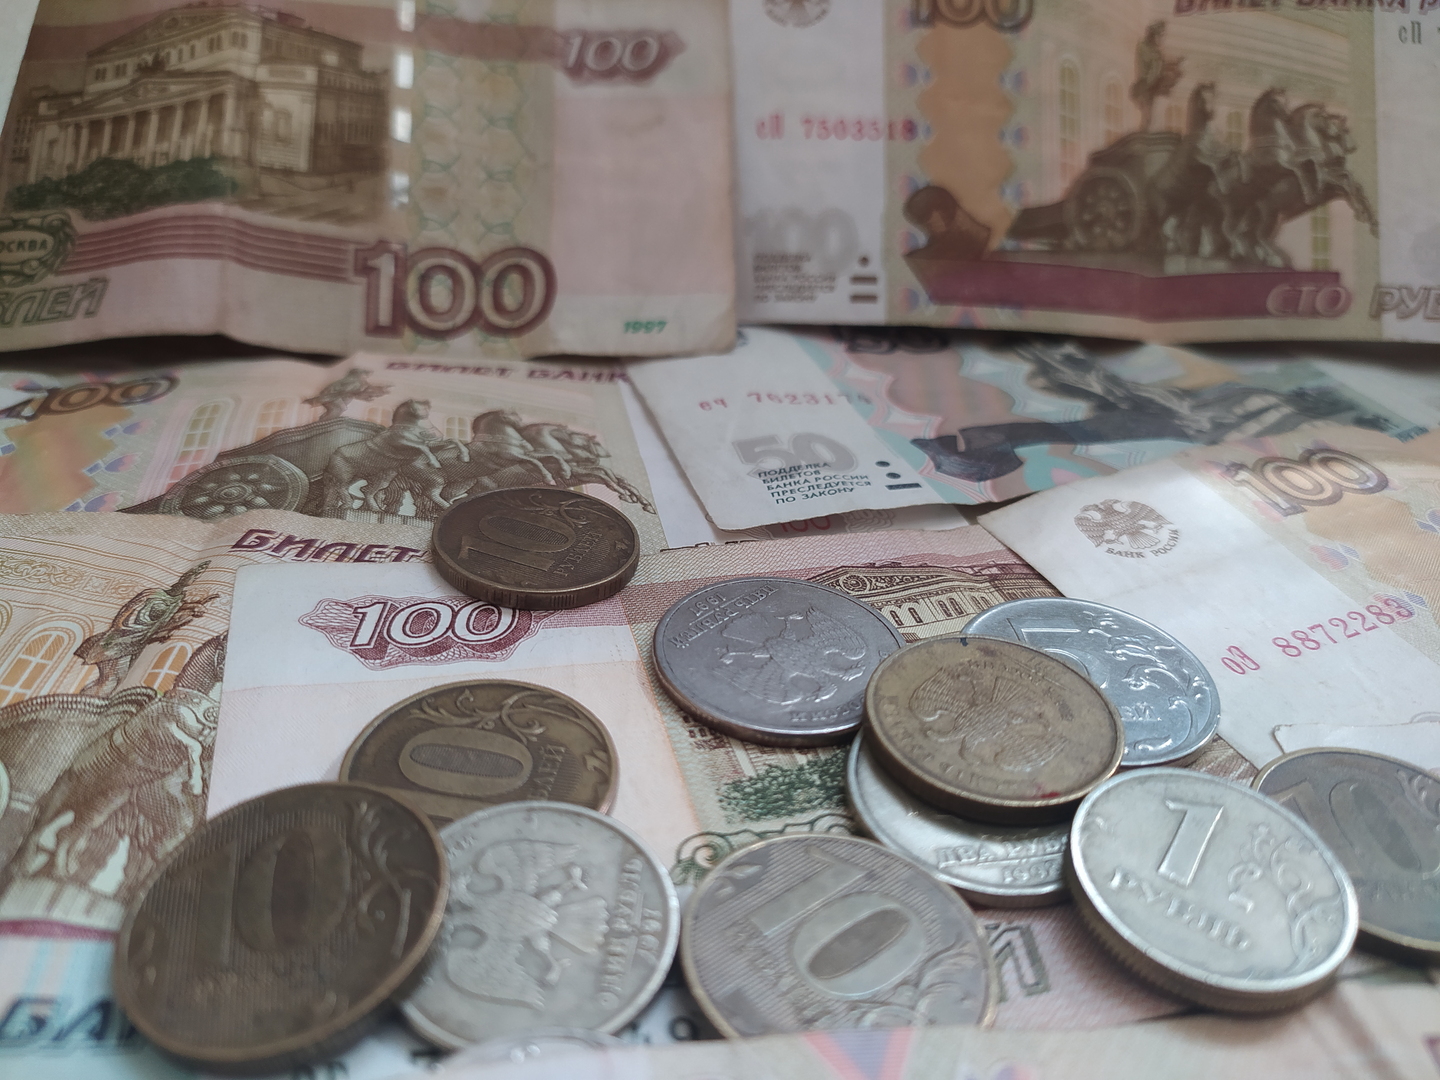 العملة الروسية تصعد.. الدولار دون مستوى 61 روبلا للمرة الأولى في أسبوعين